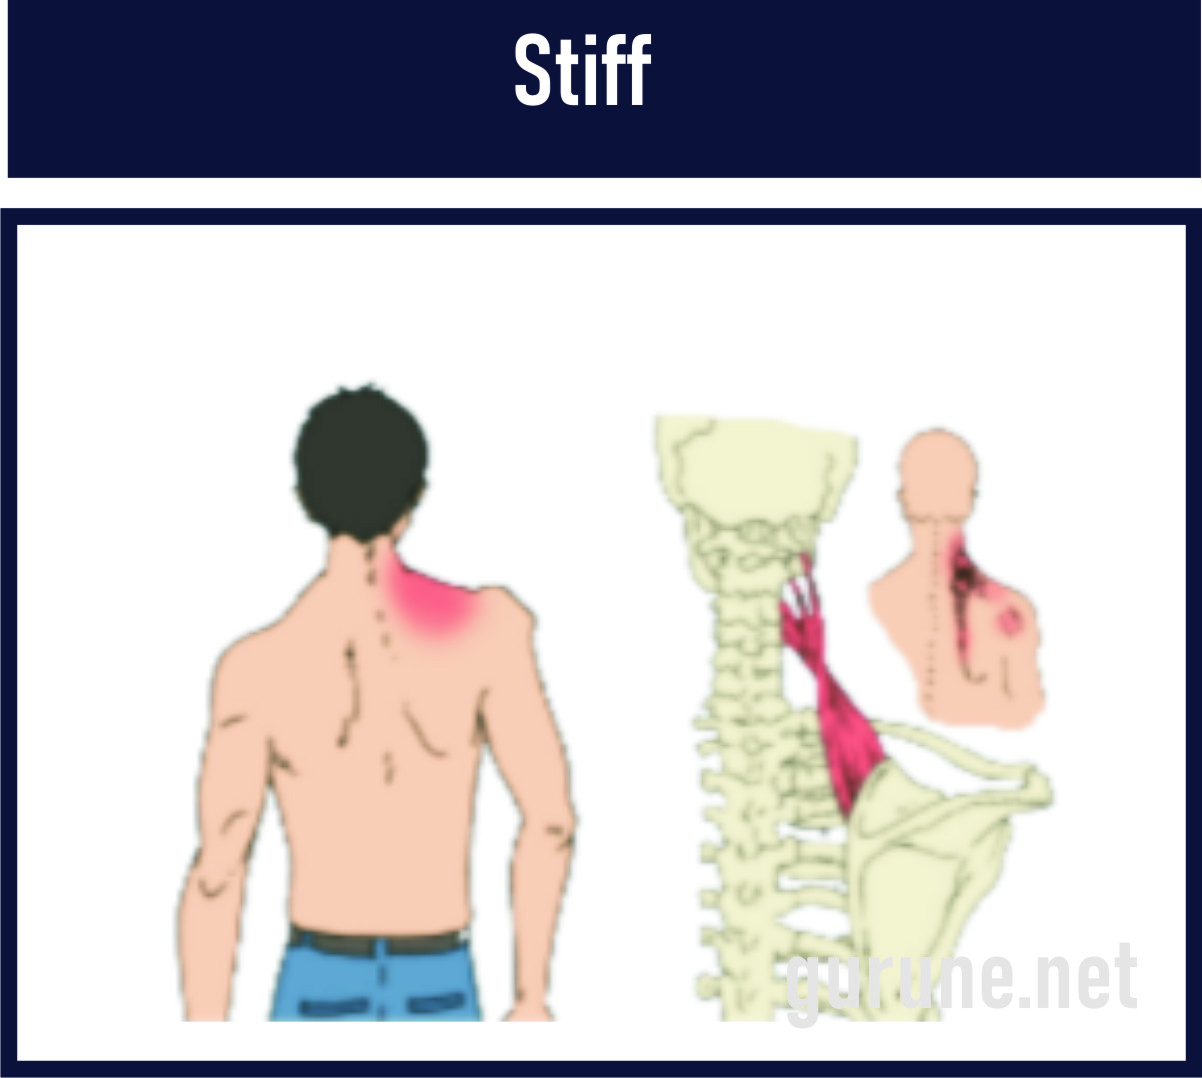 Stiff/kaku leher adalah Kelainan otot karena adanya peradangan otot trapesius leher akibat gerakan yang menghentak secara tiba-tiba/salah gerak.